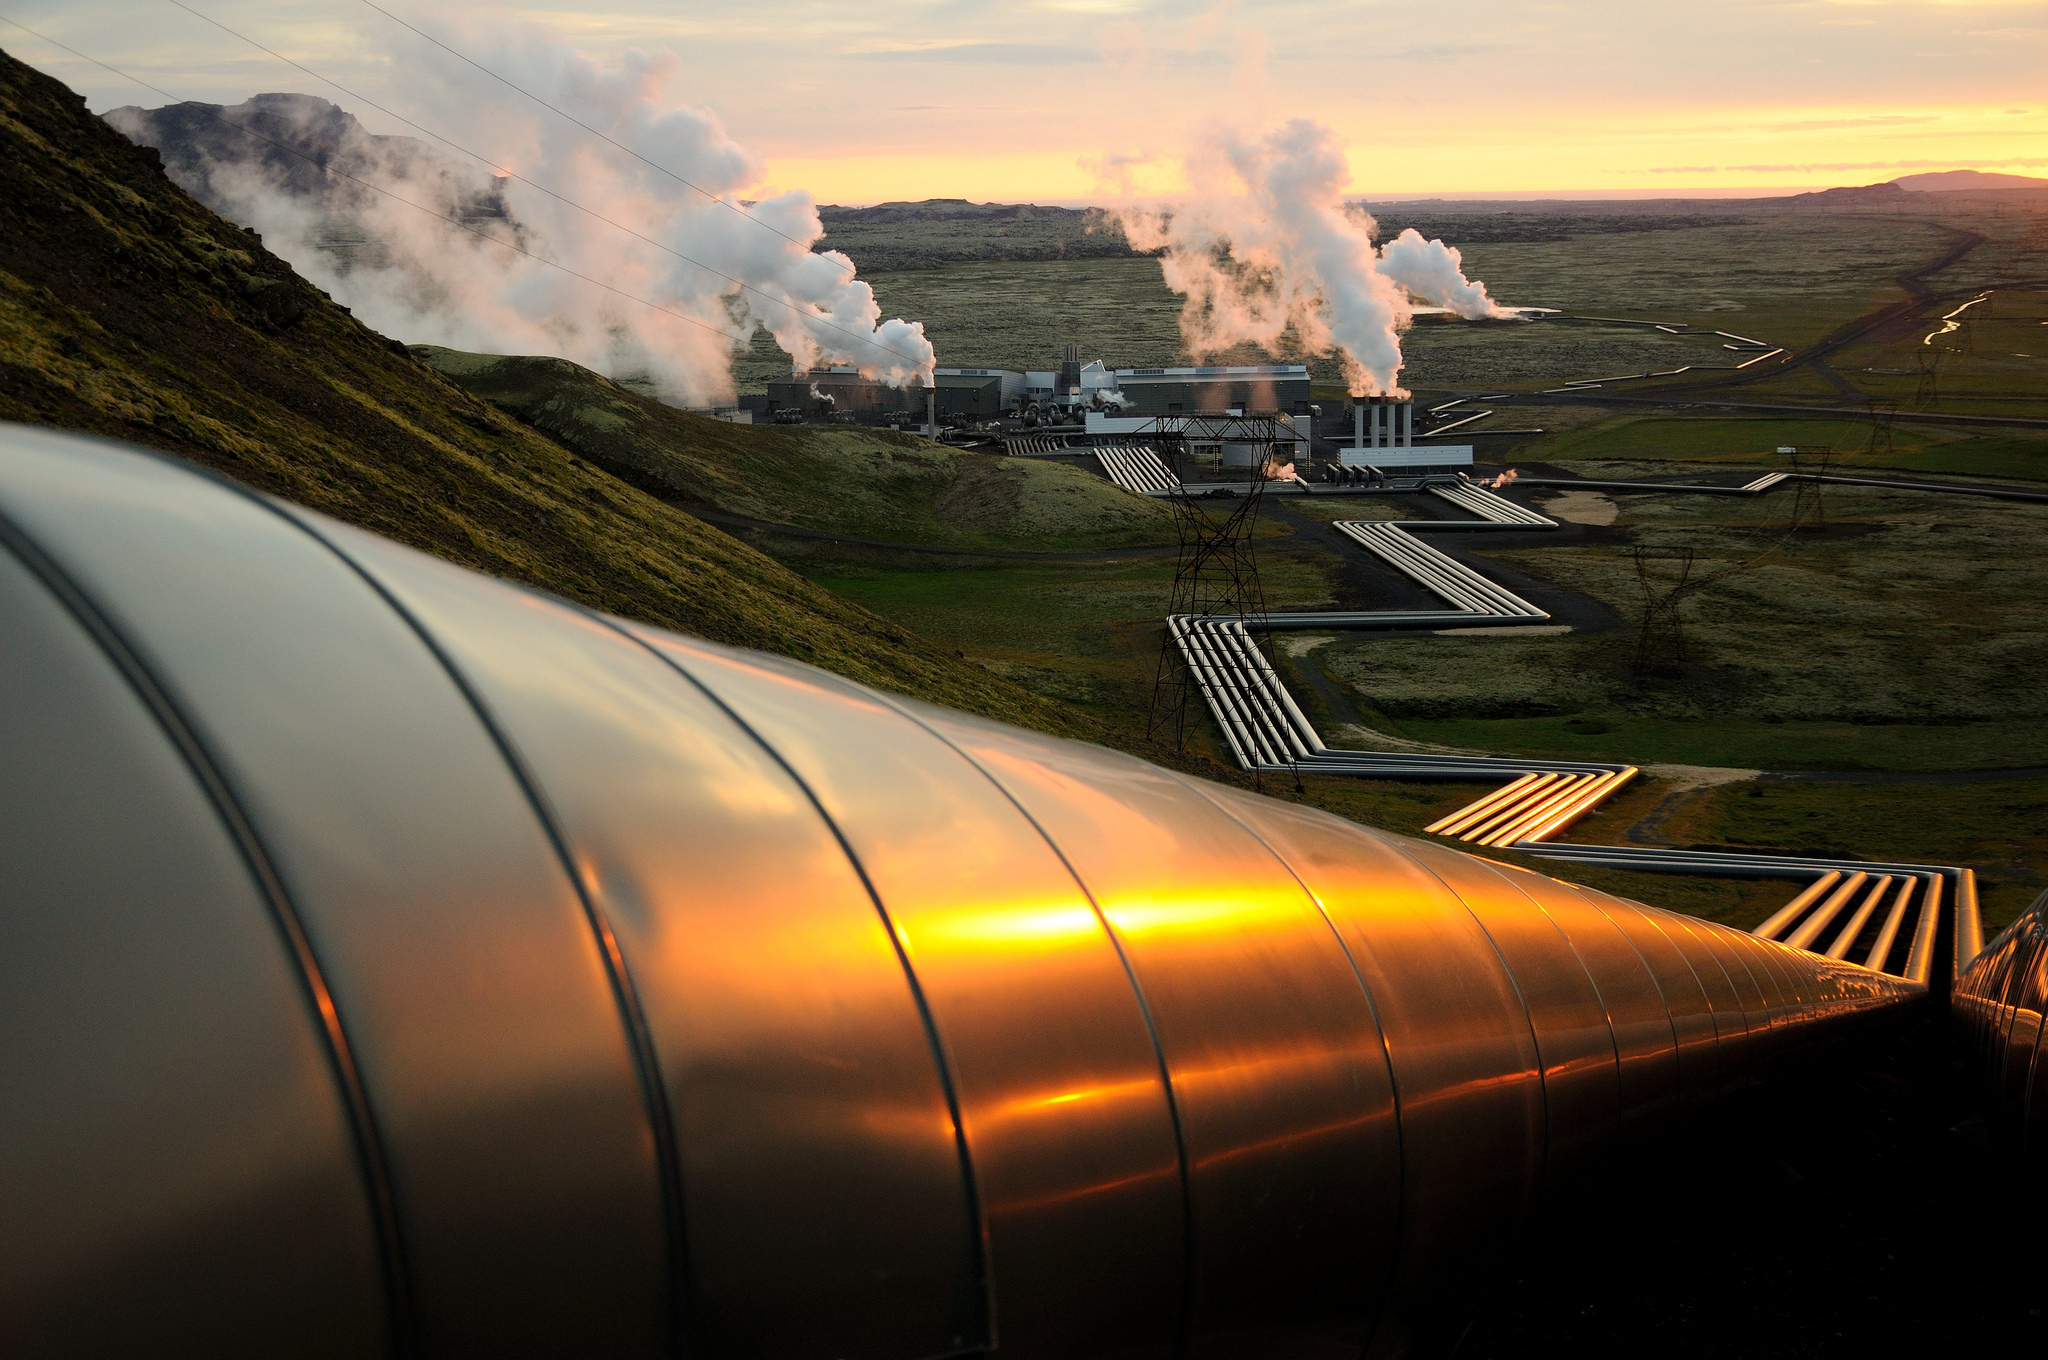 Горячий источник тепла и энергии. Геотермальная энергия в Исландии. Геотермальная станция Hellisheidi в Исландии. Несьявеллир ГЕОТЭС, Исландия. Альтернативная энергия геотермальная энергия.